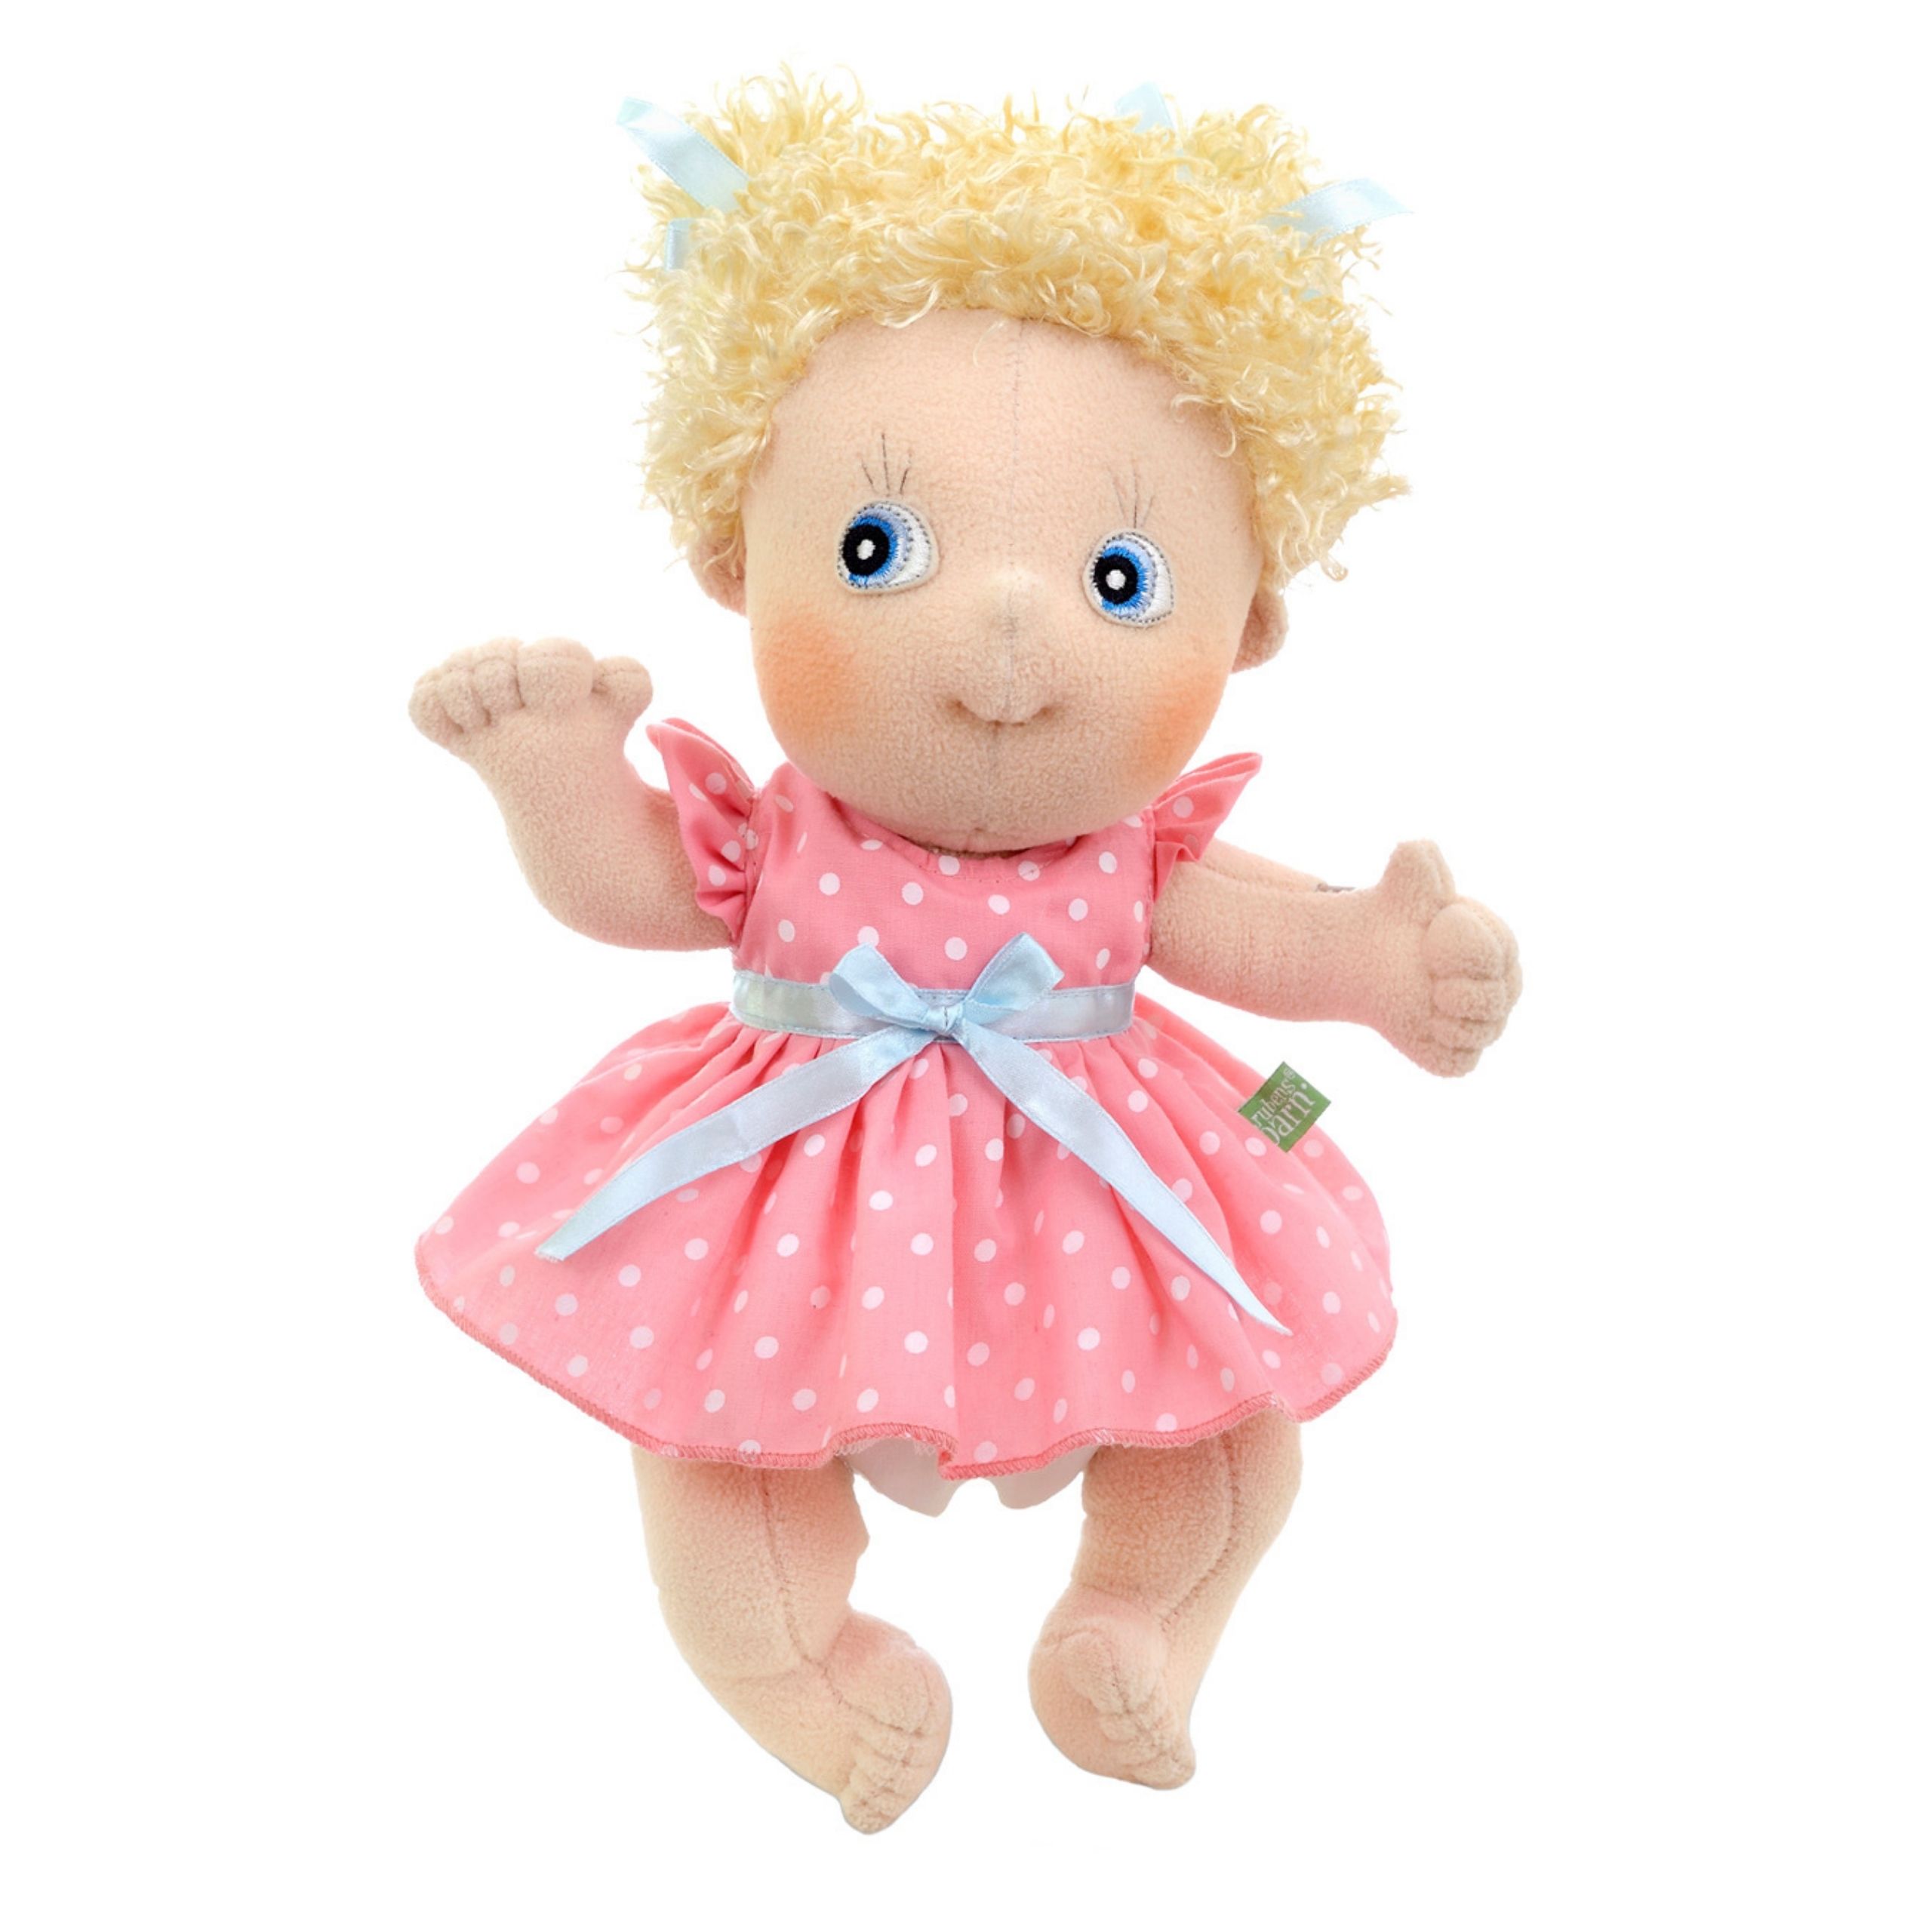 Soft dolls rubens barn soft doll emelie cutie classic